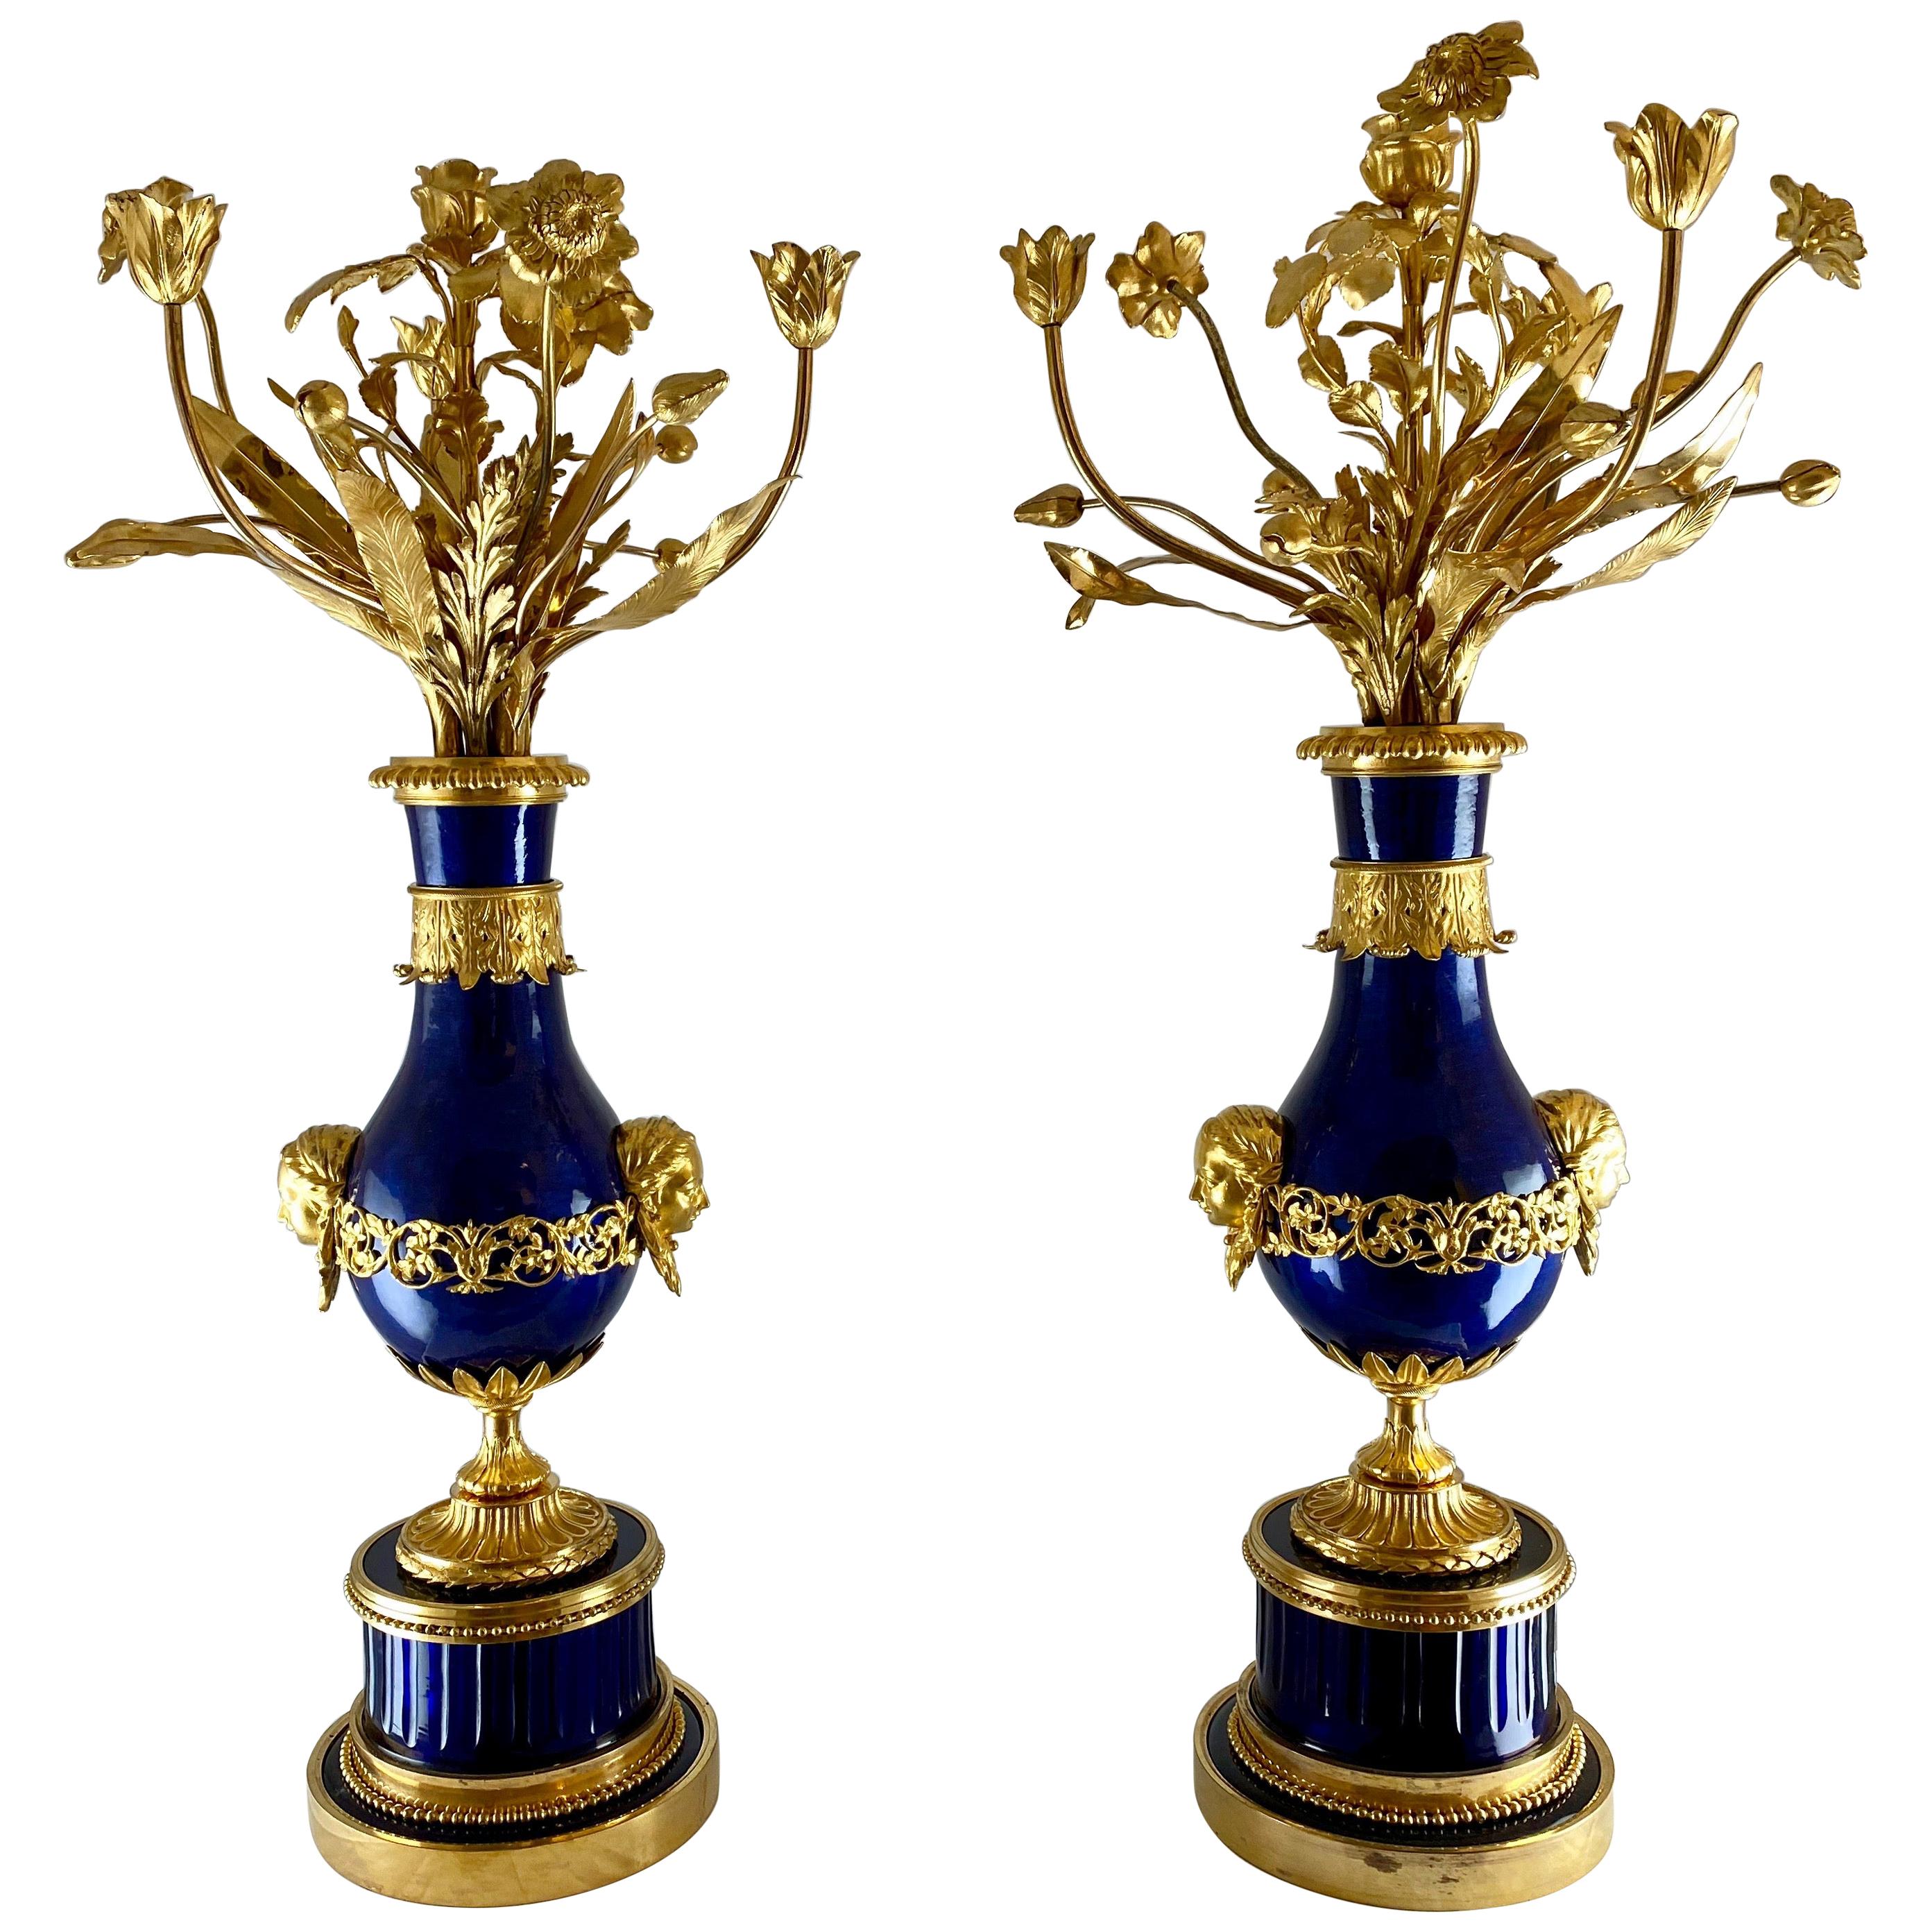 Ein fantastisches Paar Kandelaber aus dem späten 18. Jahrhundert. Die Sockel sind aus dickem, koboltblauem, geschliffenem Glas gefertigt, was sehr ungewöhnlich ist. Die balusterförmigen Vasen sind aus versilbertem Kupfer gefertigt, das blau